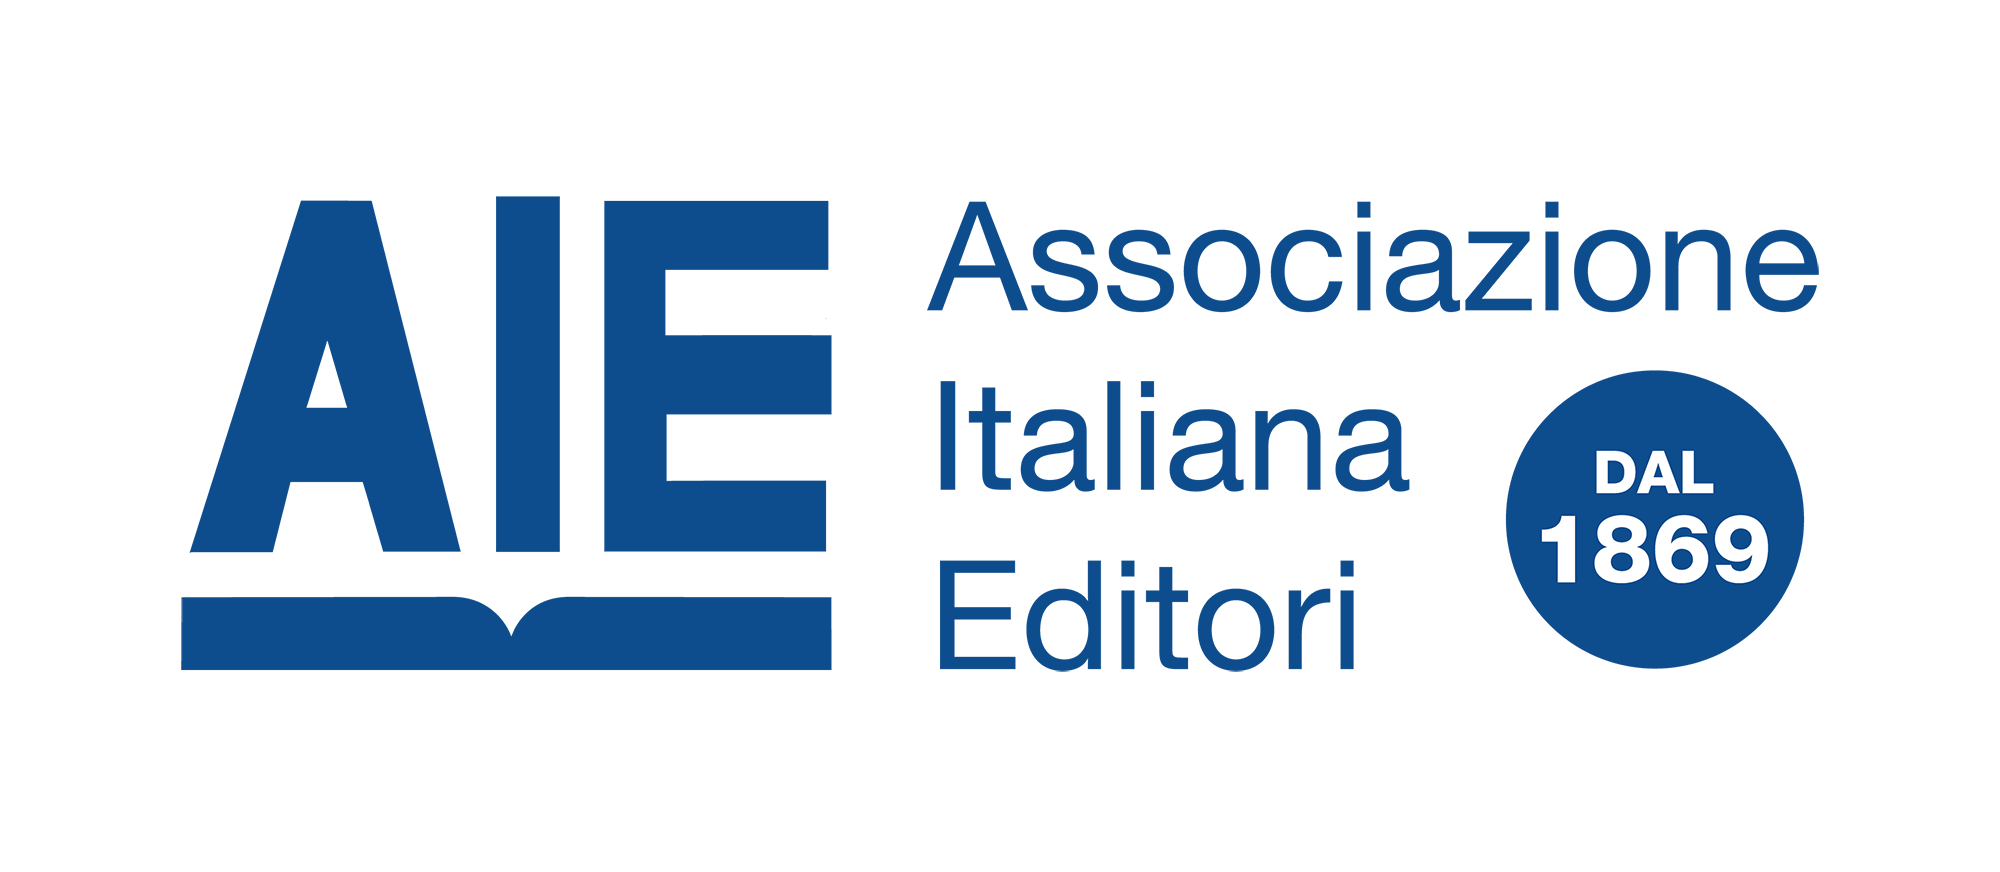 AIE associazione italiana editori